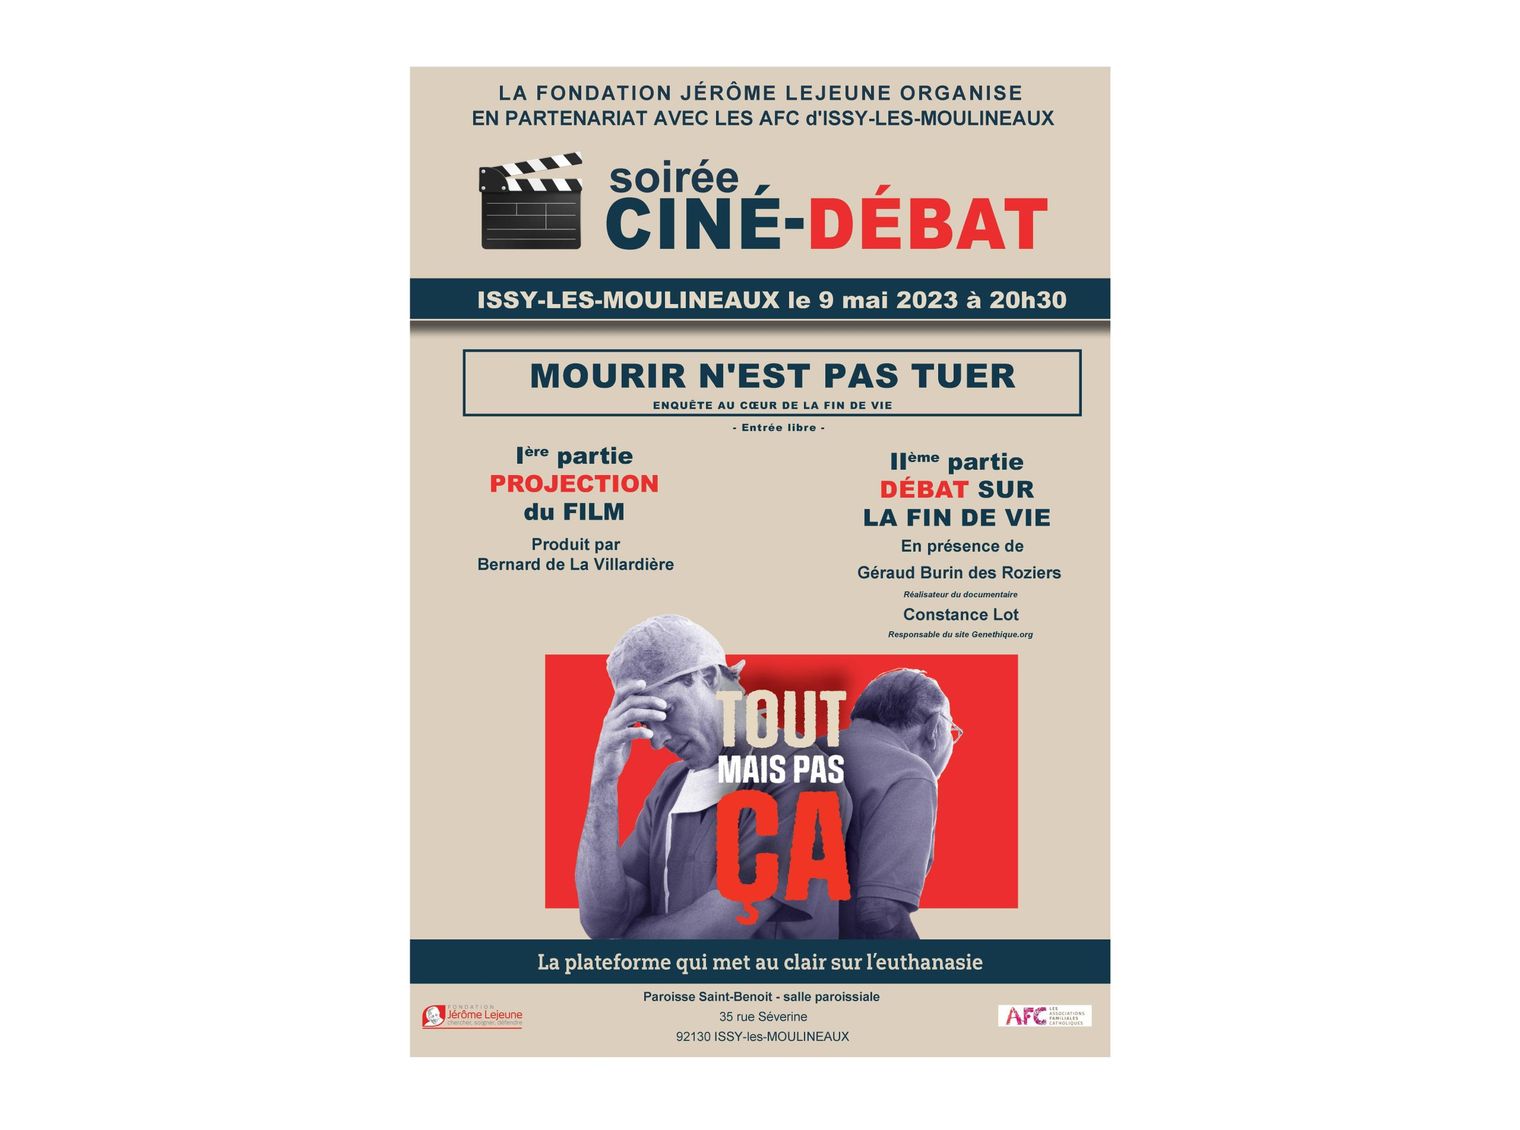 Ciné-débat Fin de vie AFC Issy-les-Moulineaux